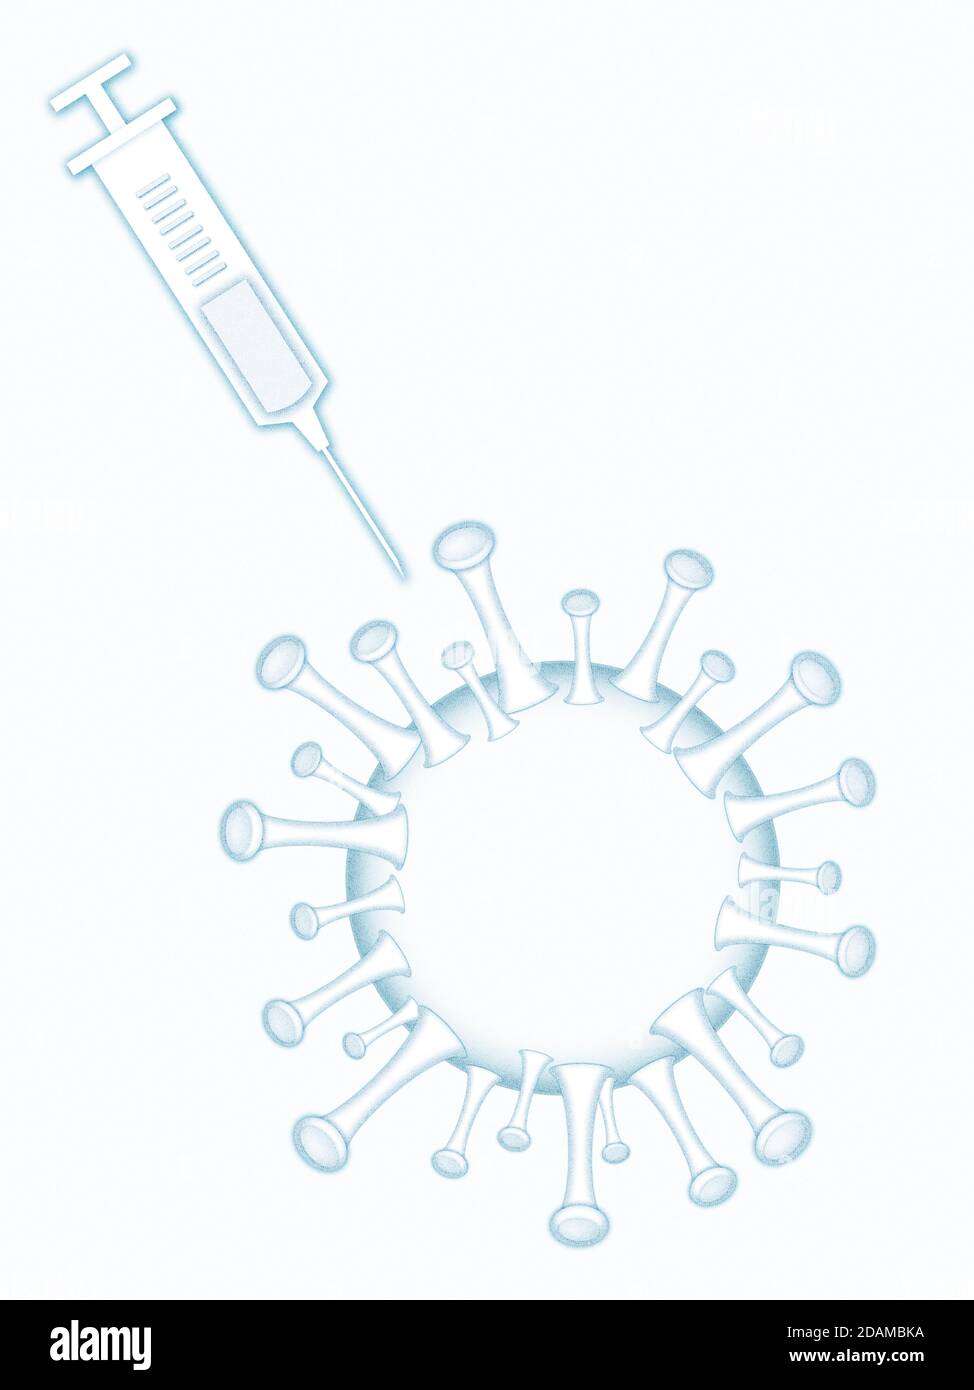 Covid-19 virus with syringe, illustration. Stock Photo